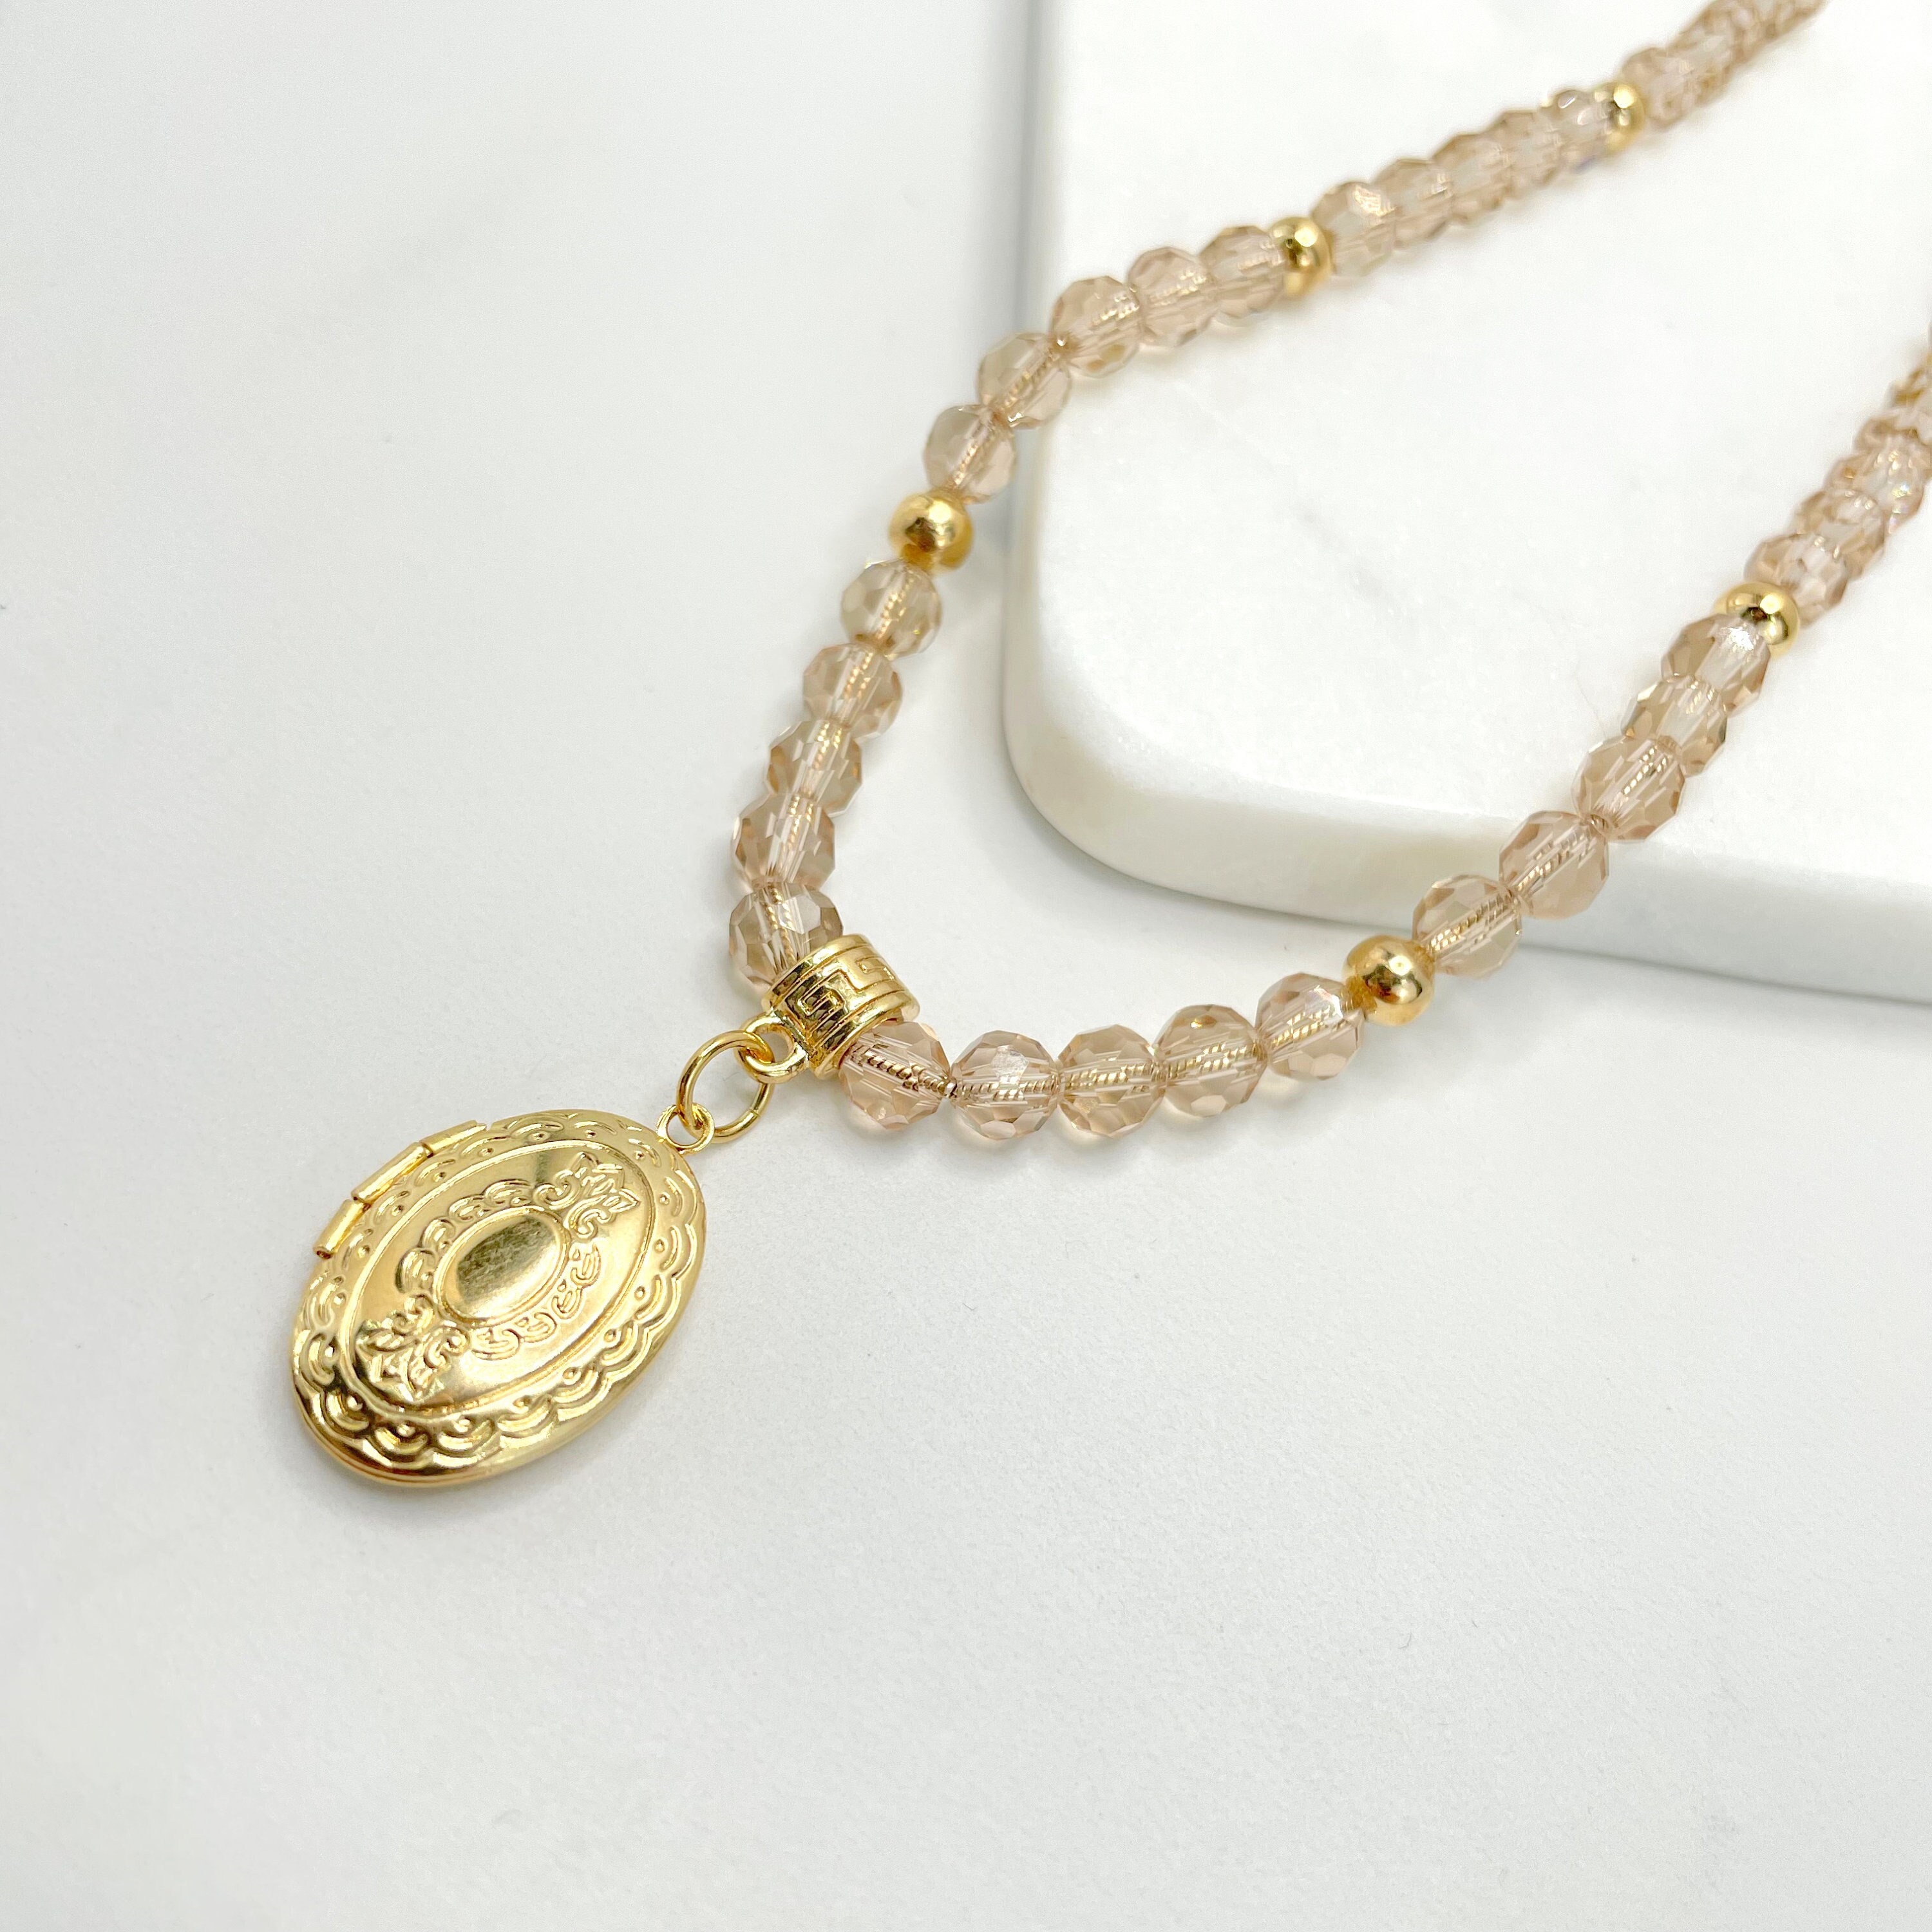 Wholesale 18-Karat gold chain lock hip-hop rock style necklace